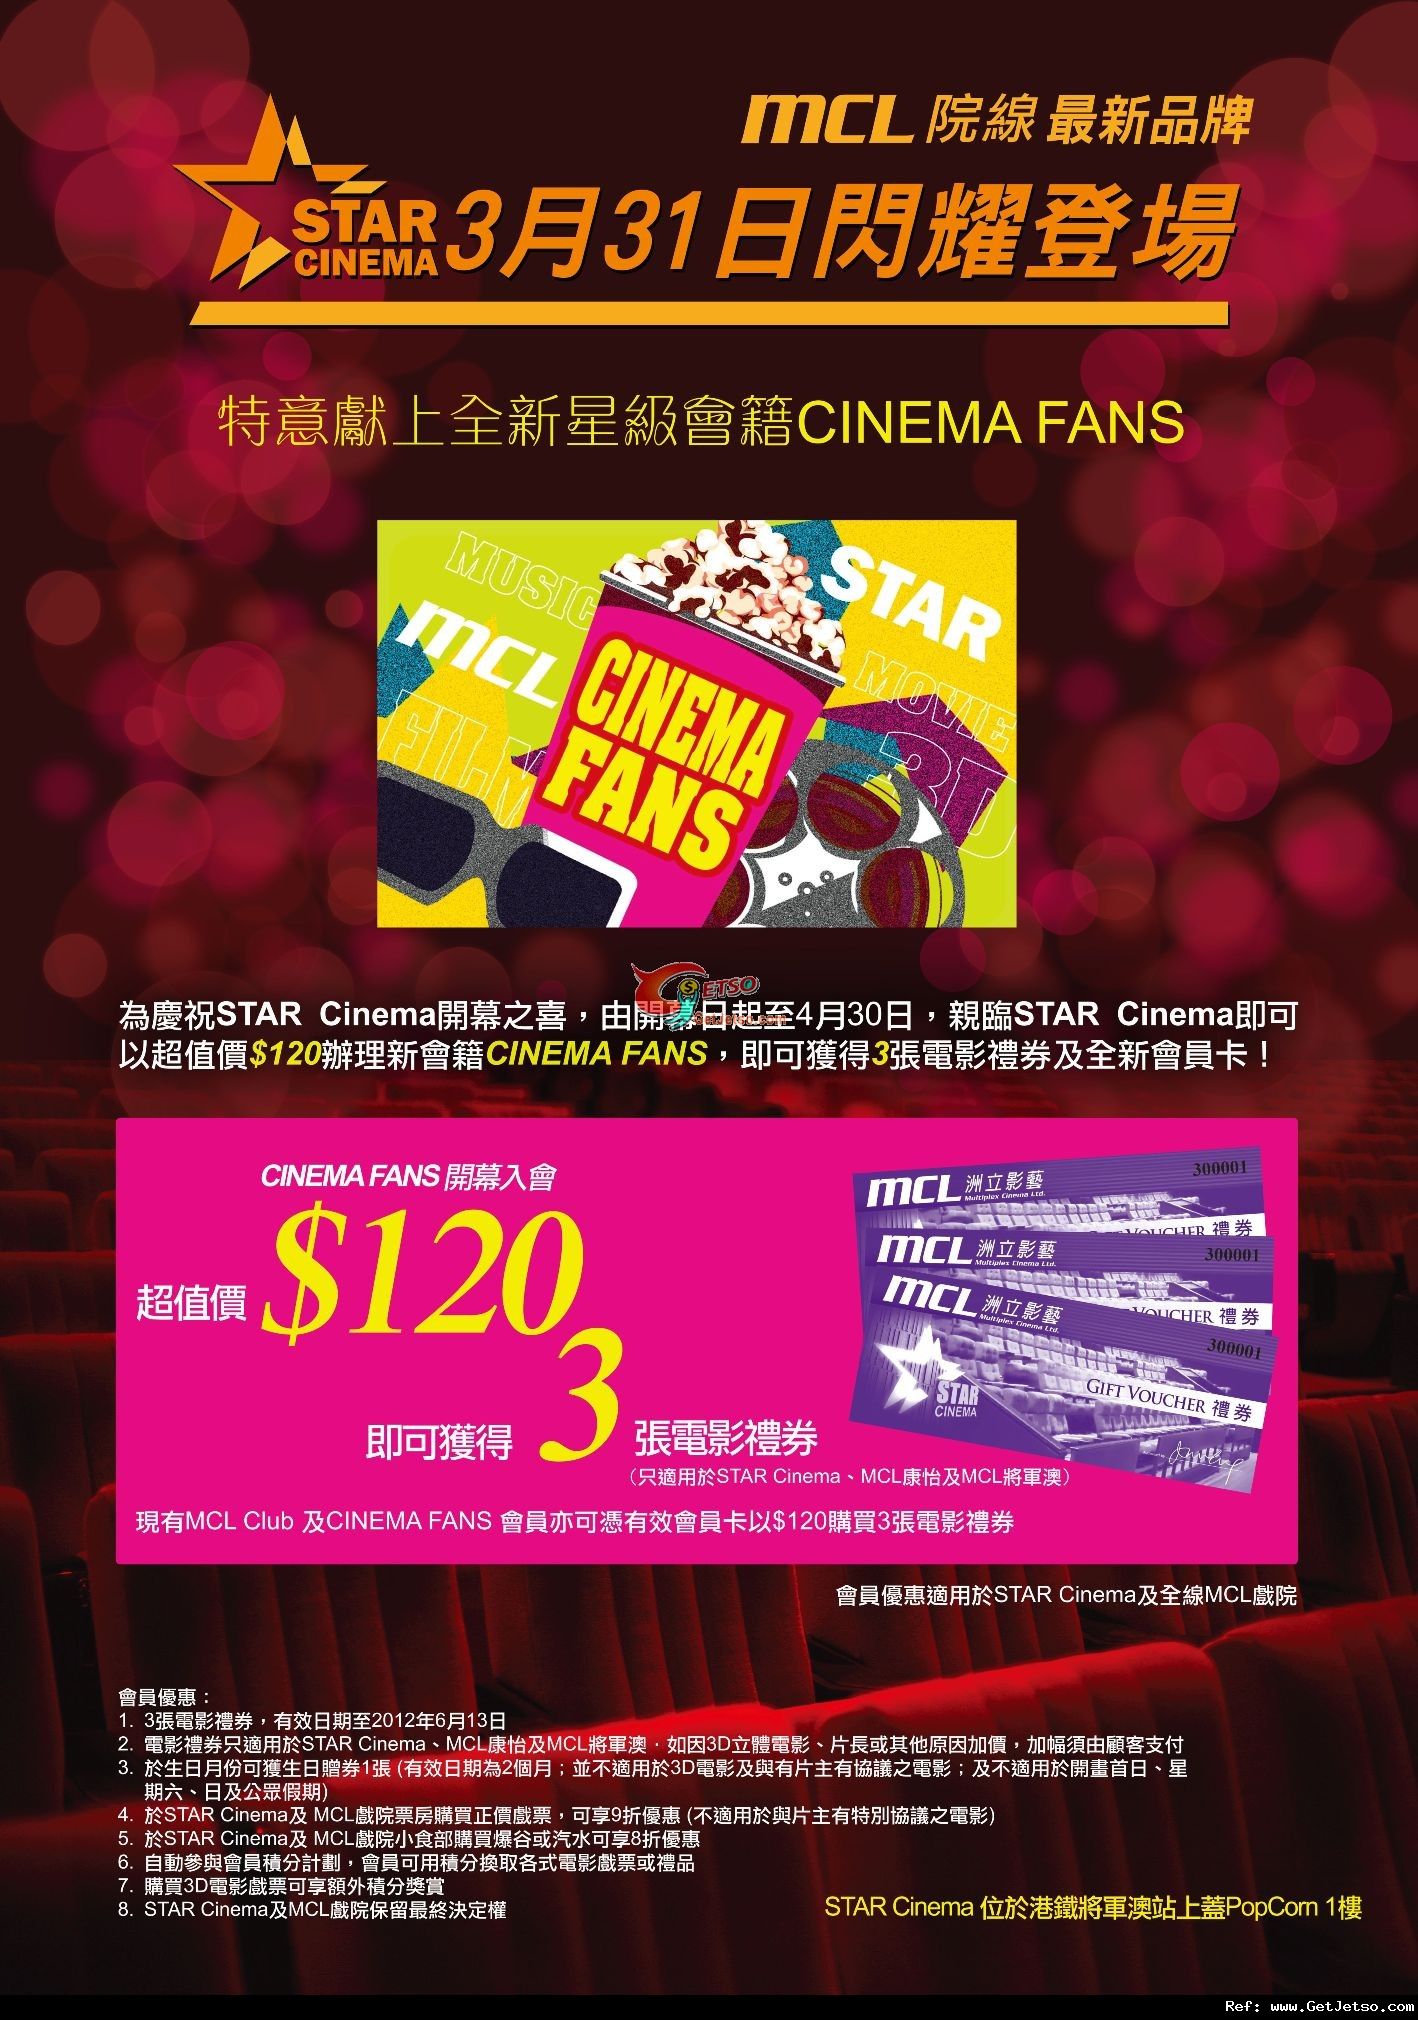 MCL院線Star Cinema 星級會籍0享3張電影禮券優惠(至12年4月30日)圖片1